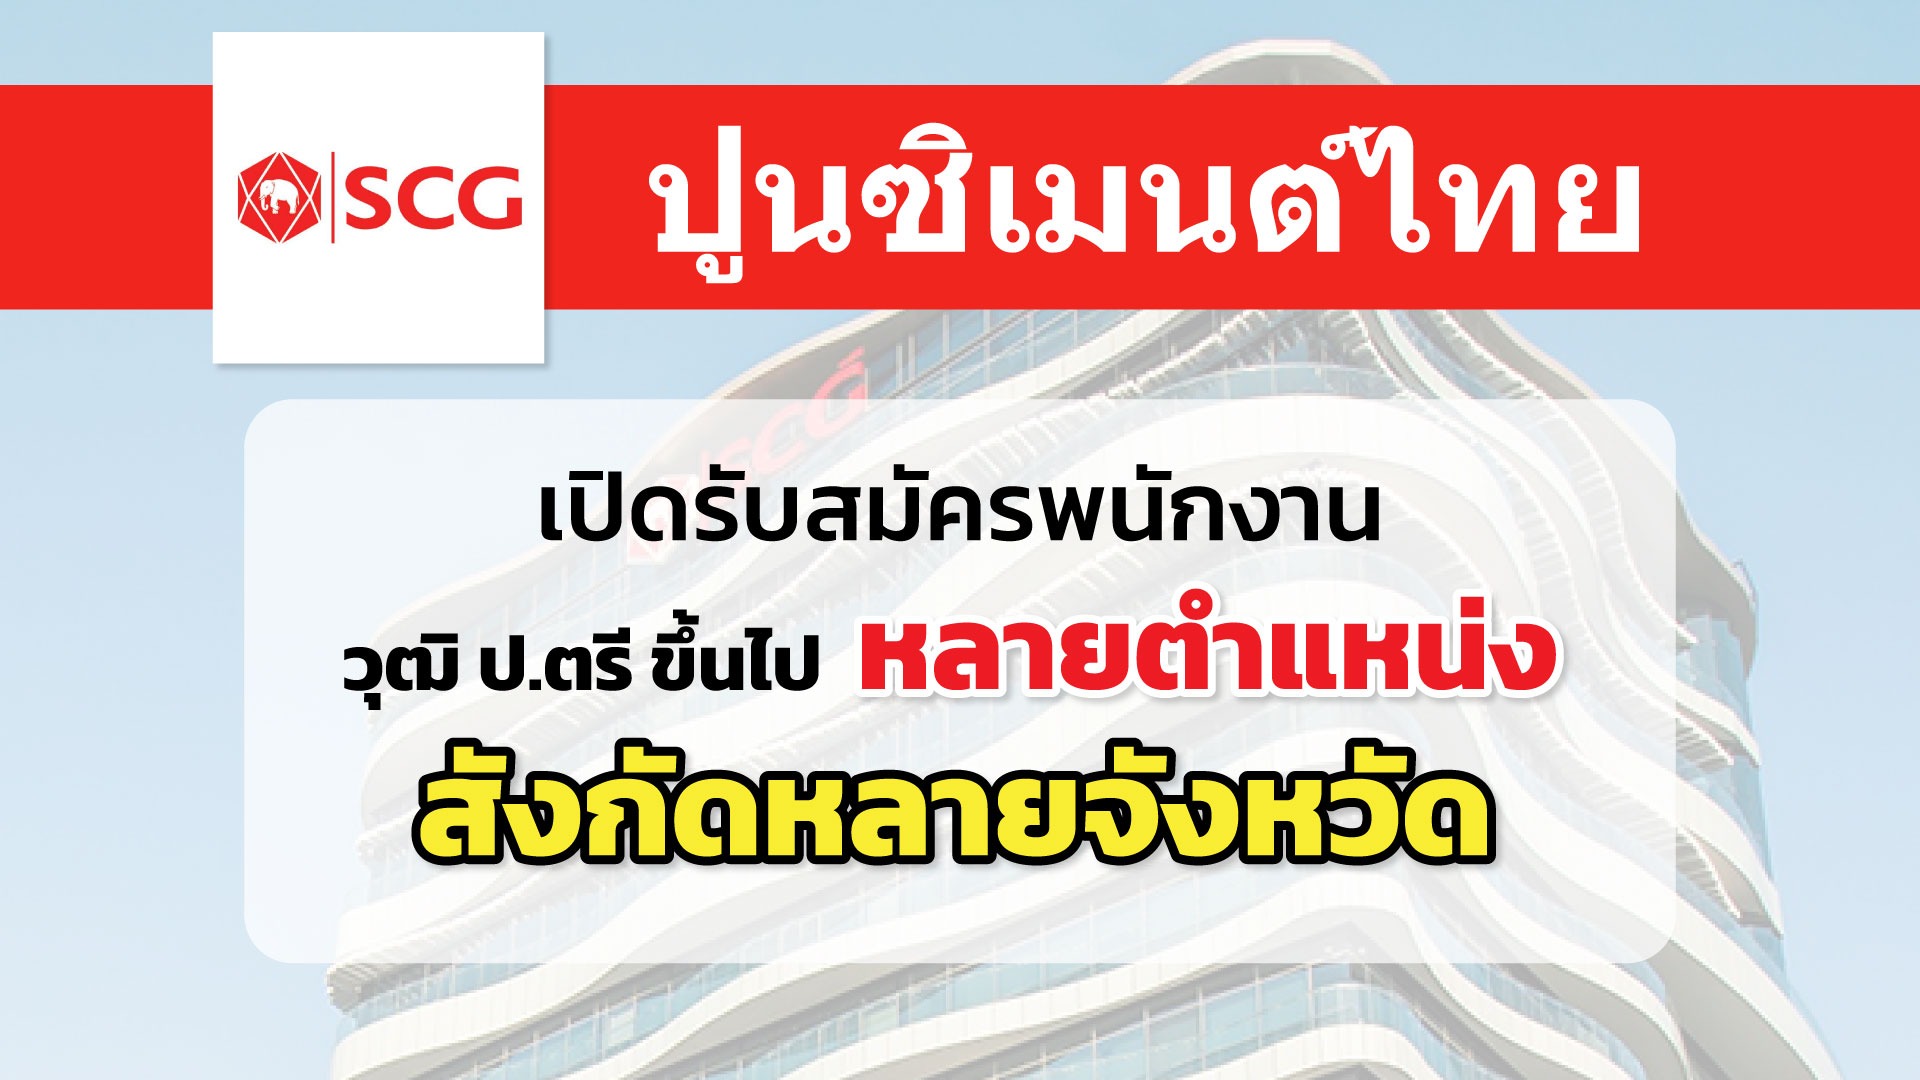 SCG ปูนซิเมนต์ไทย เปิดรับสมัครพนักงานหลายอัตรา